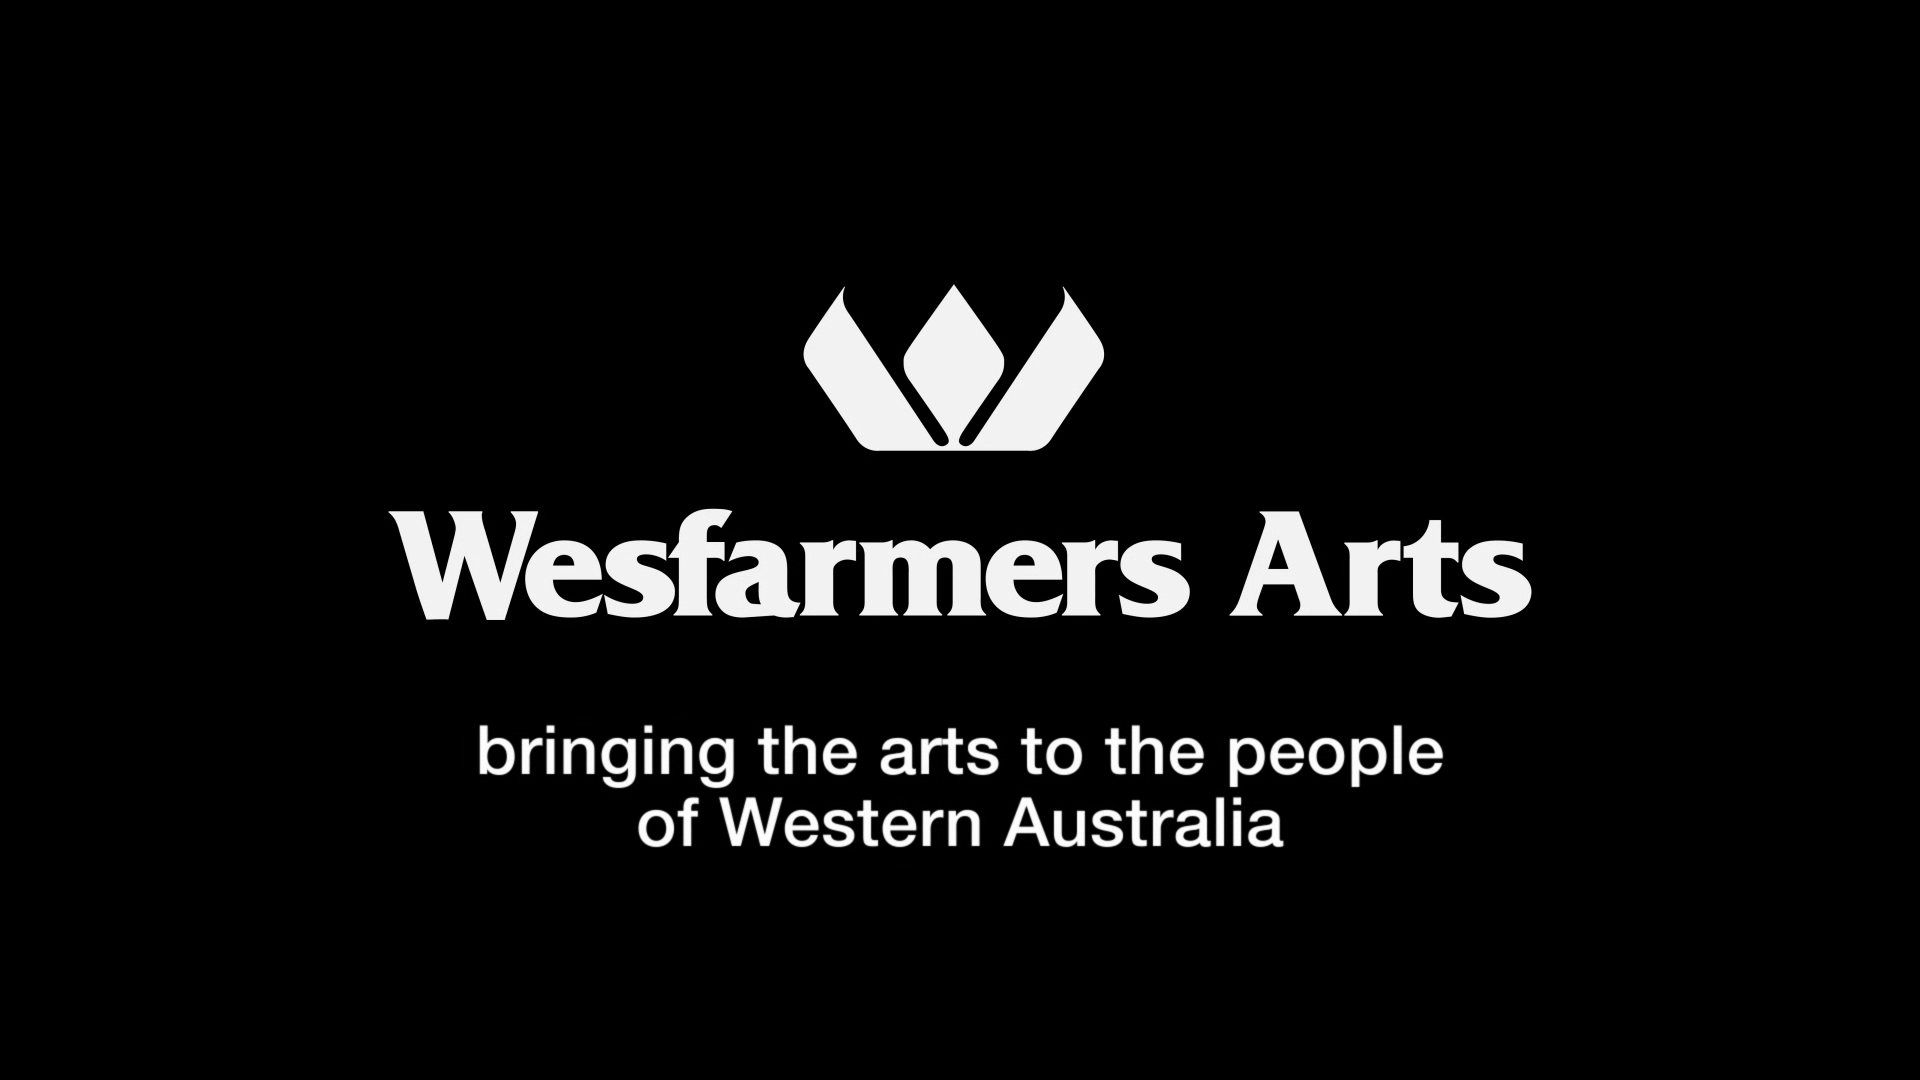 Wesfarmers Arts video